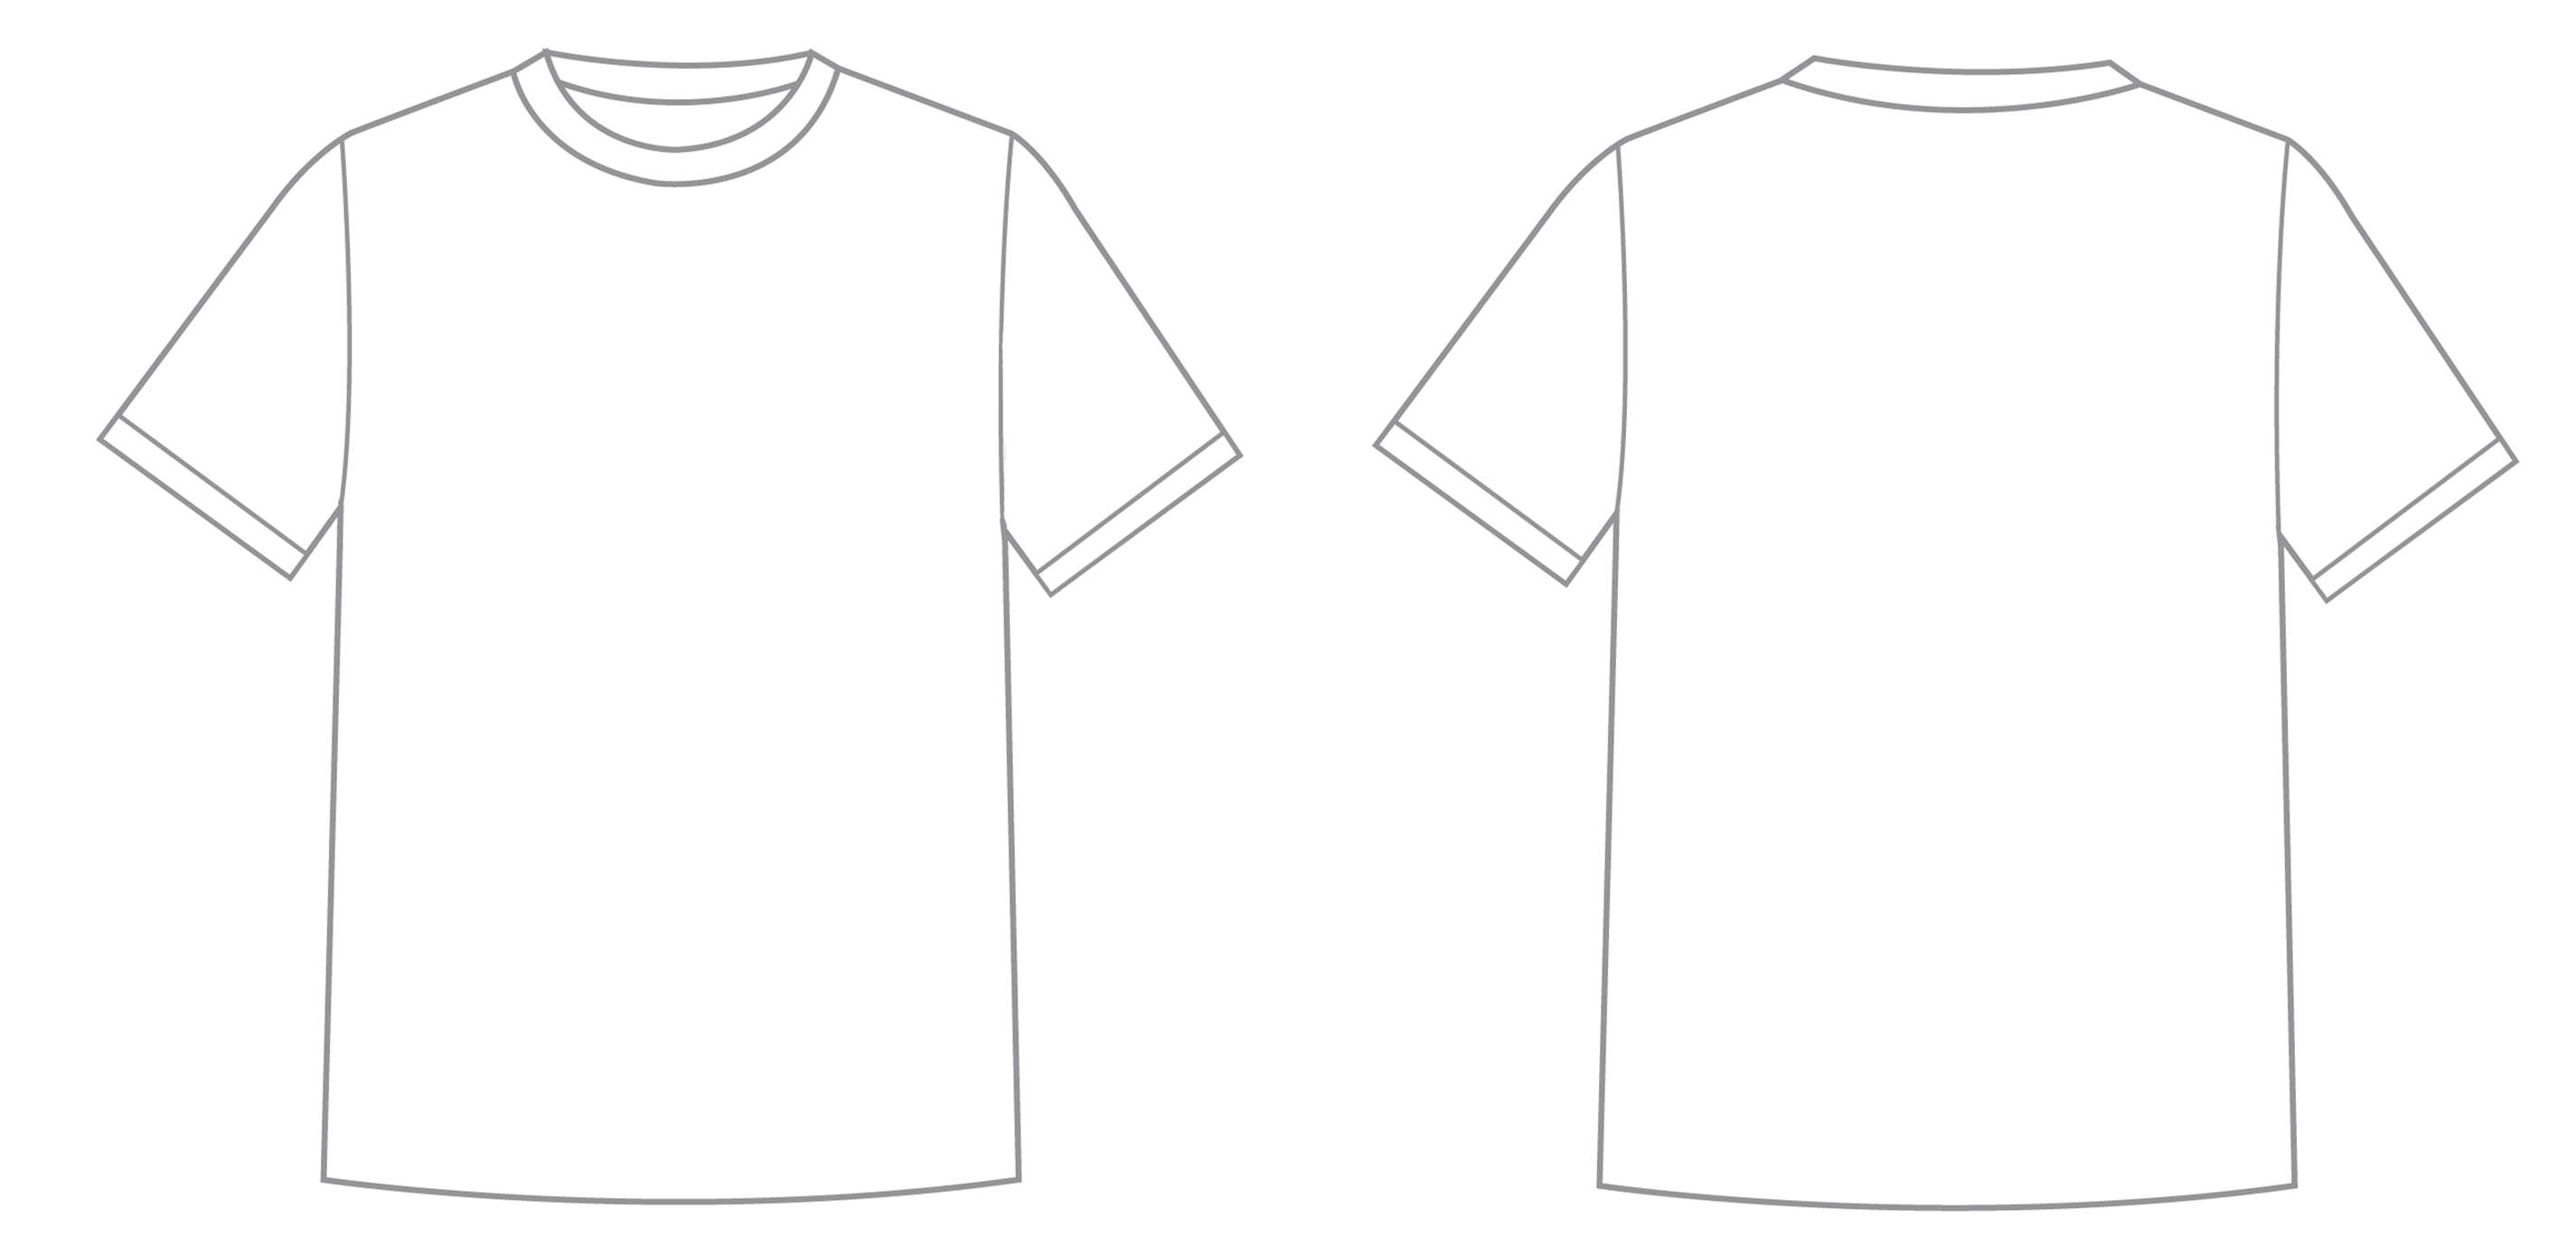 shirt clipart shirt logo